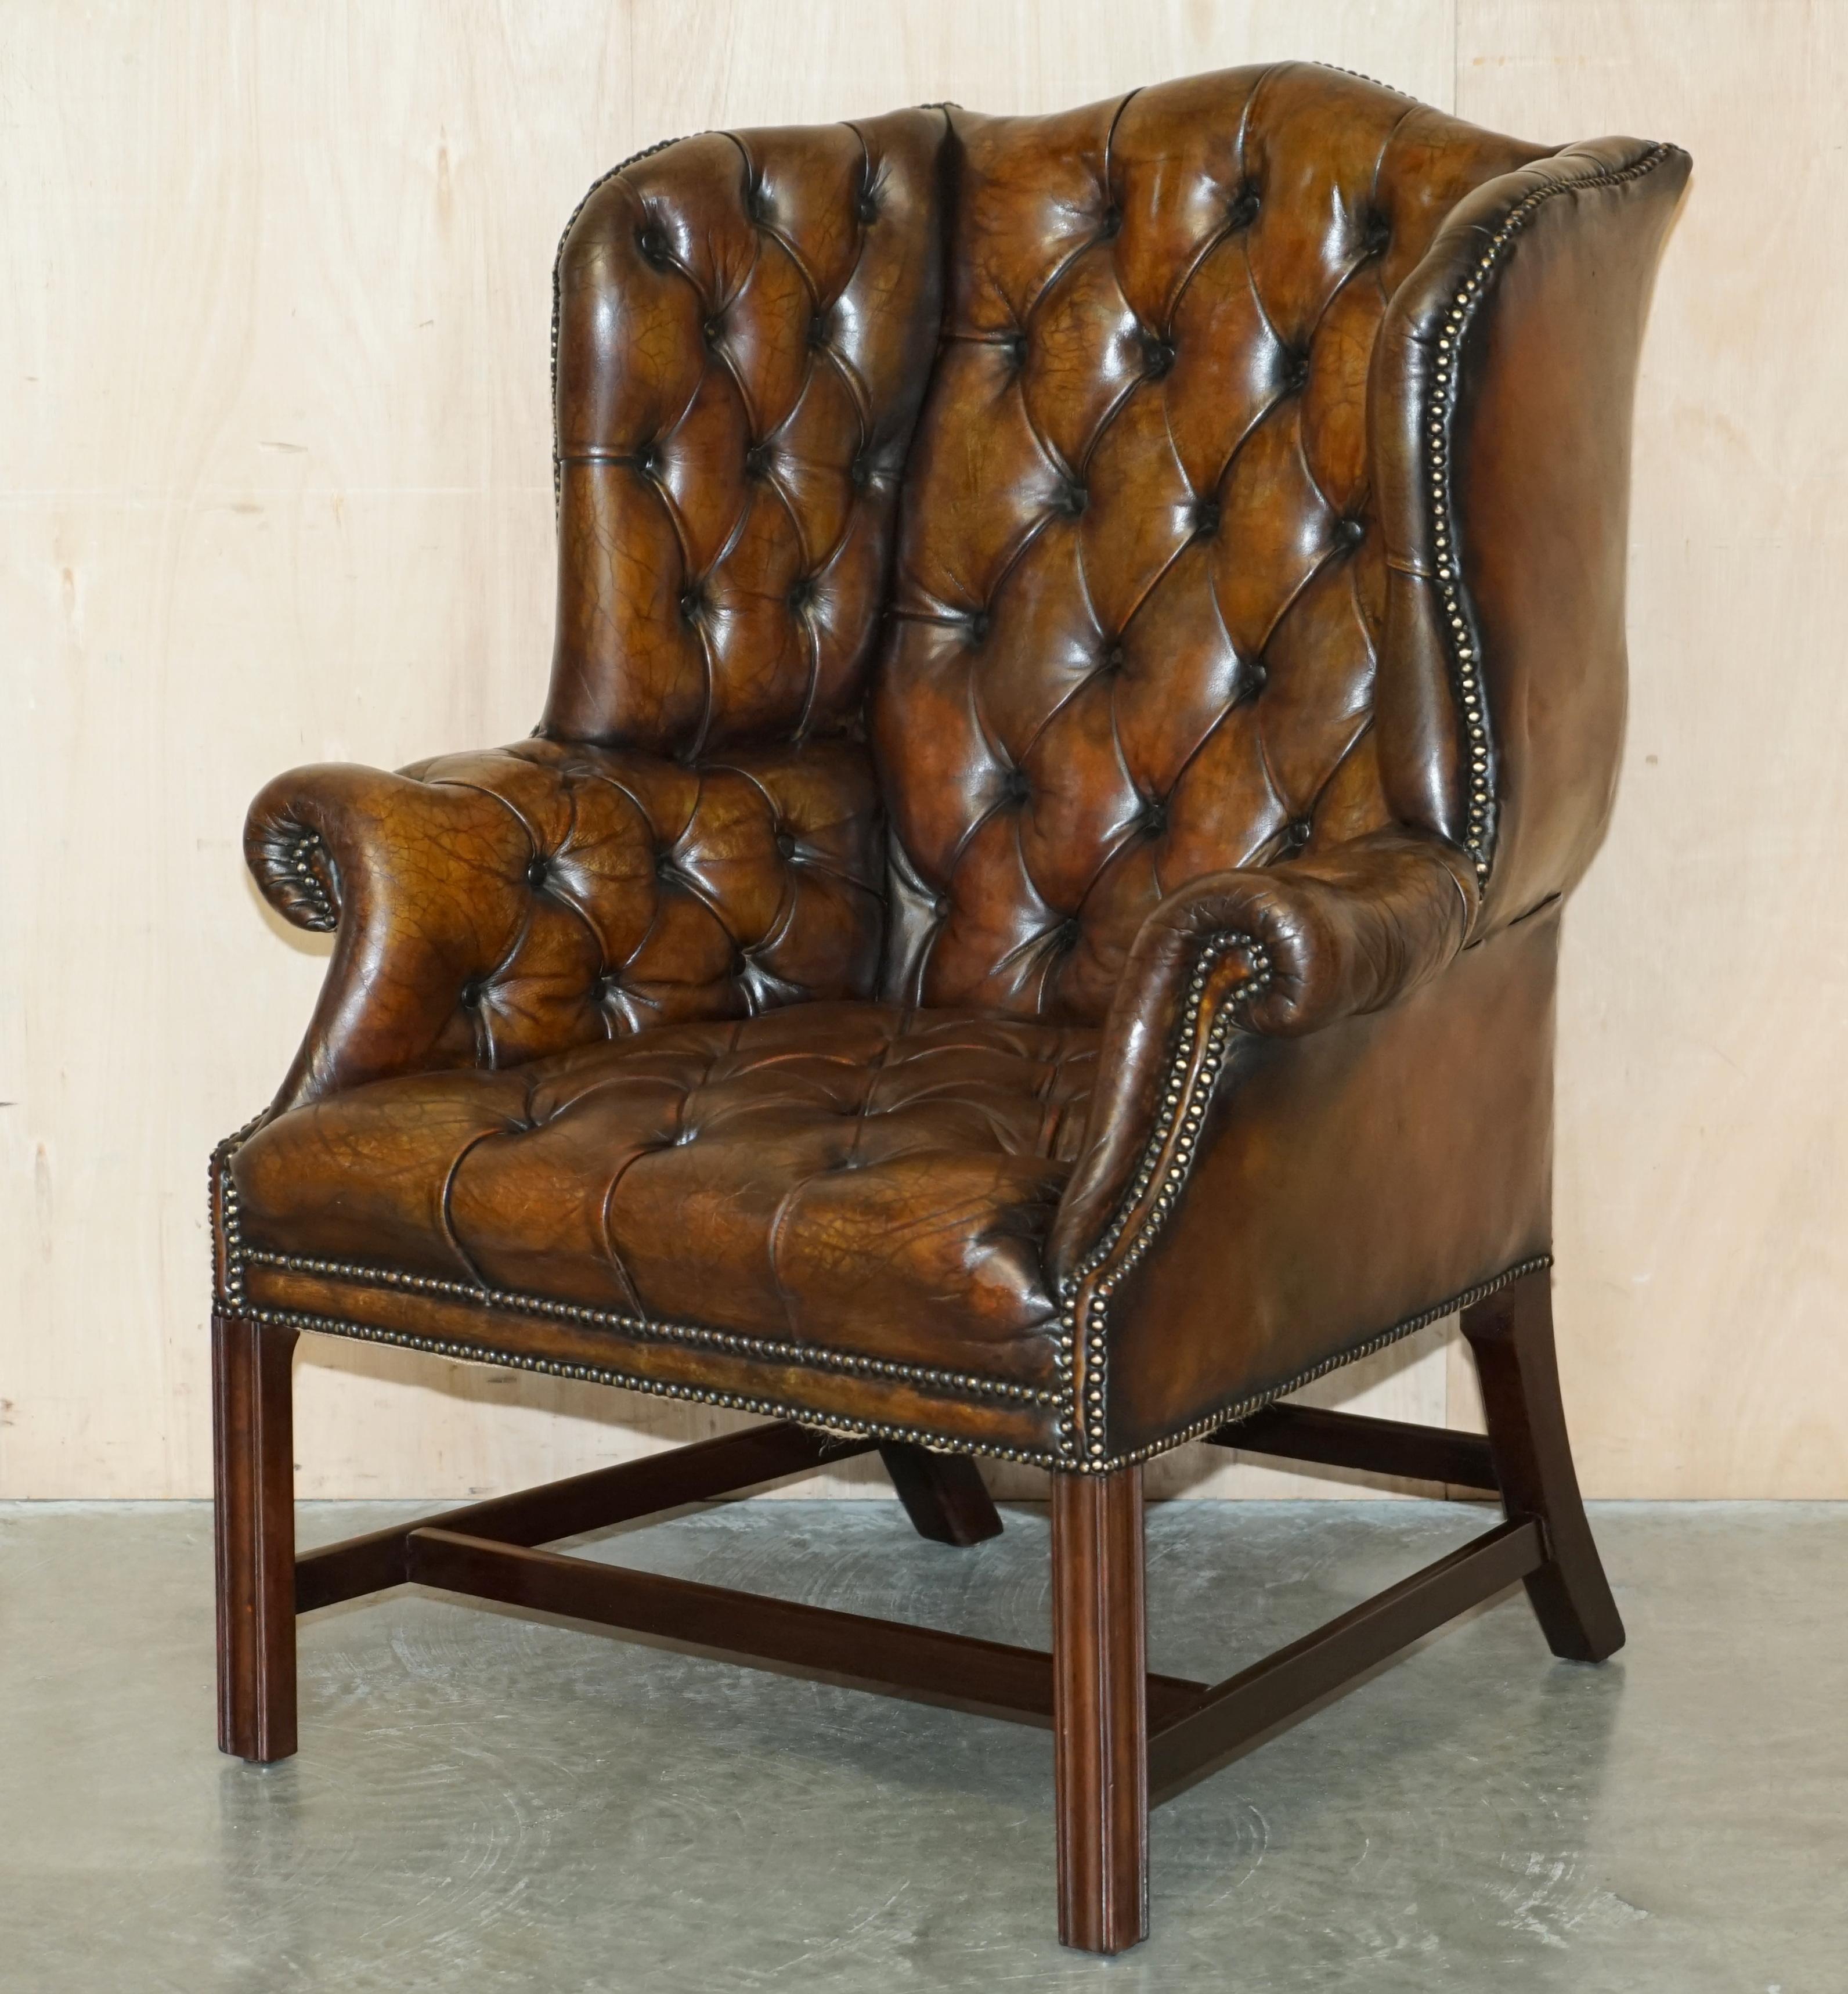 Royal House Antiques

The House of Antiques a le plaisir d'offrir à la vente cette superbe paire de fauteuils Wingback en cuir teint à la main, datant des années 1920, entièrement restaurés. 

Veuillez noter que les frais de livraison indiqués ne